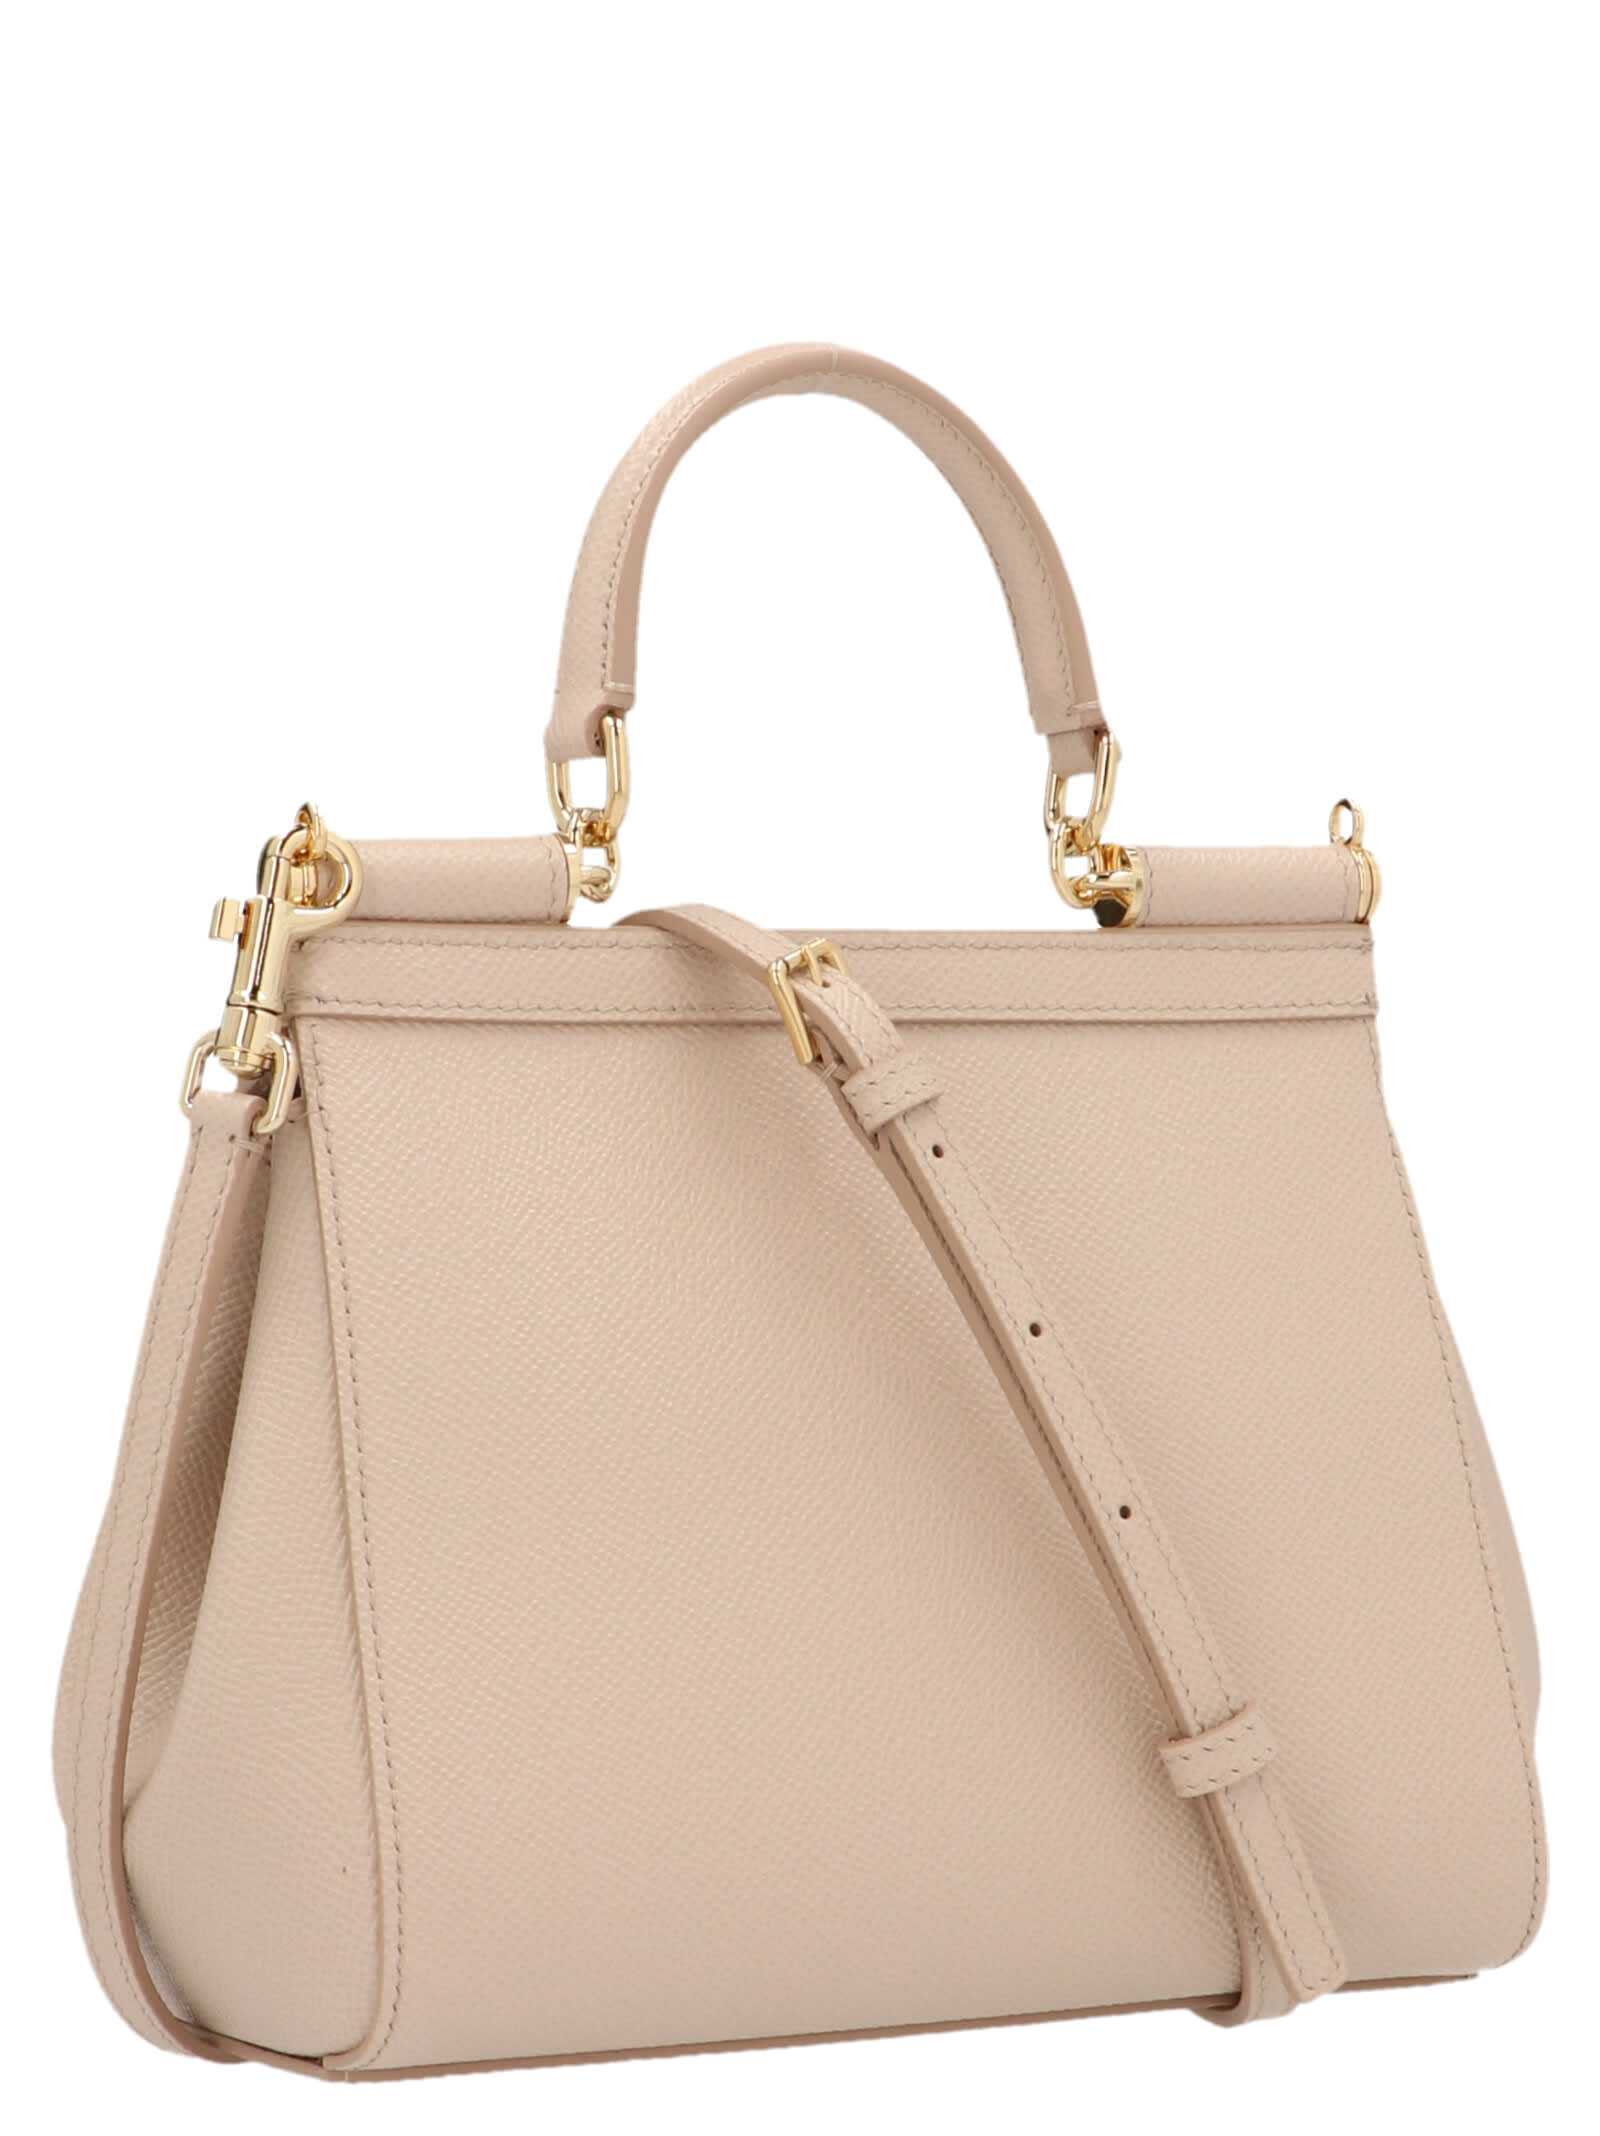 Dolce & Gabbana sicily Mini Handbag